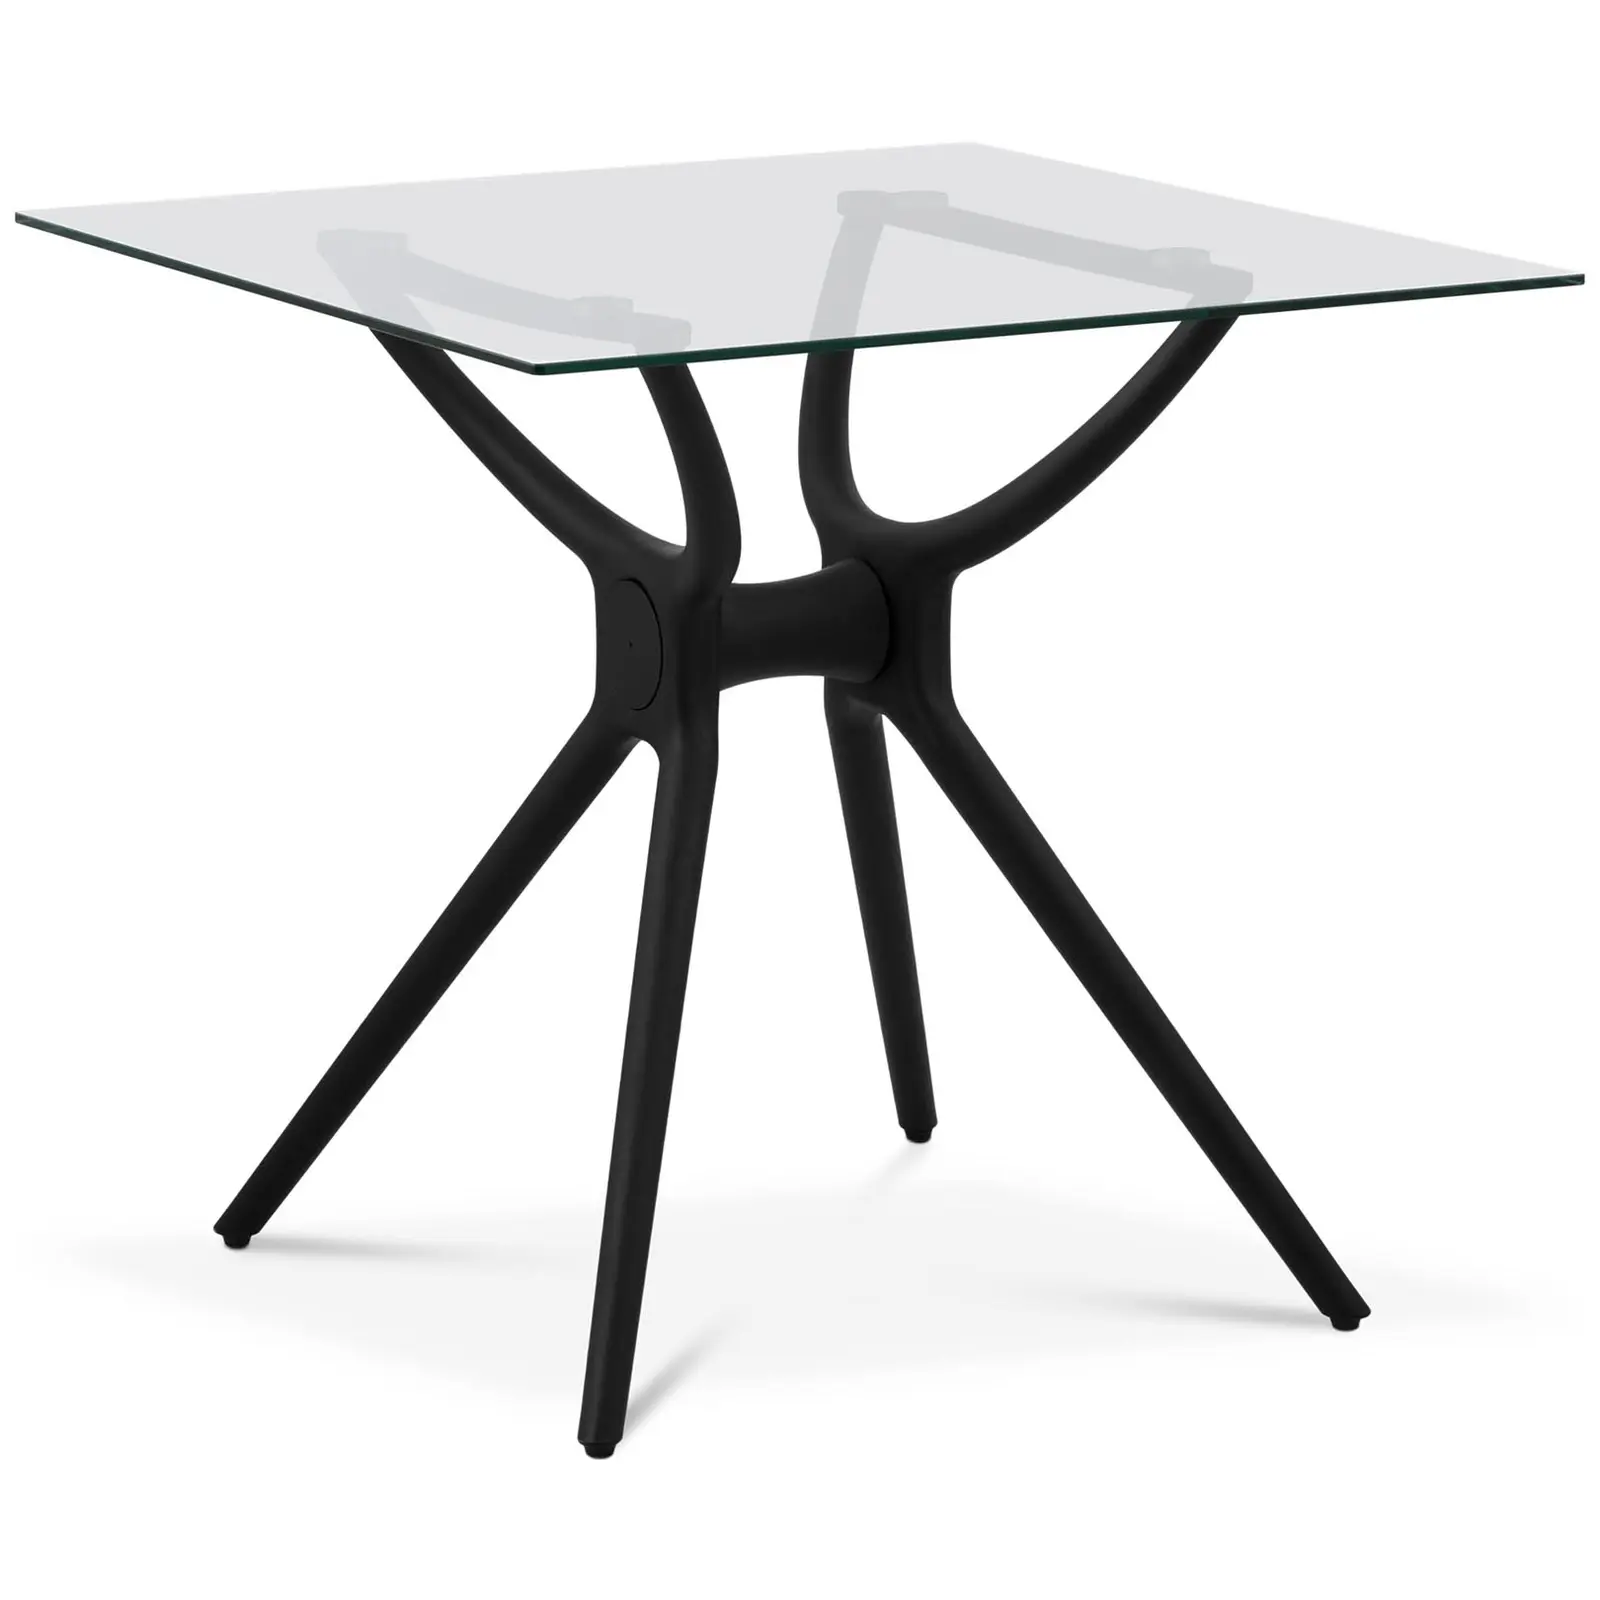 Tweedehands tafel - vierkant - 80 x 80 cm - glazen blad